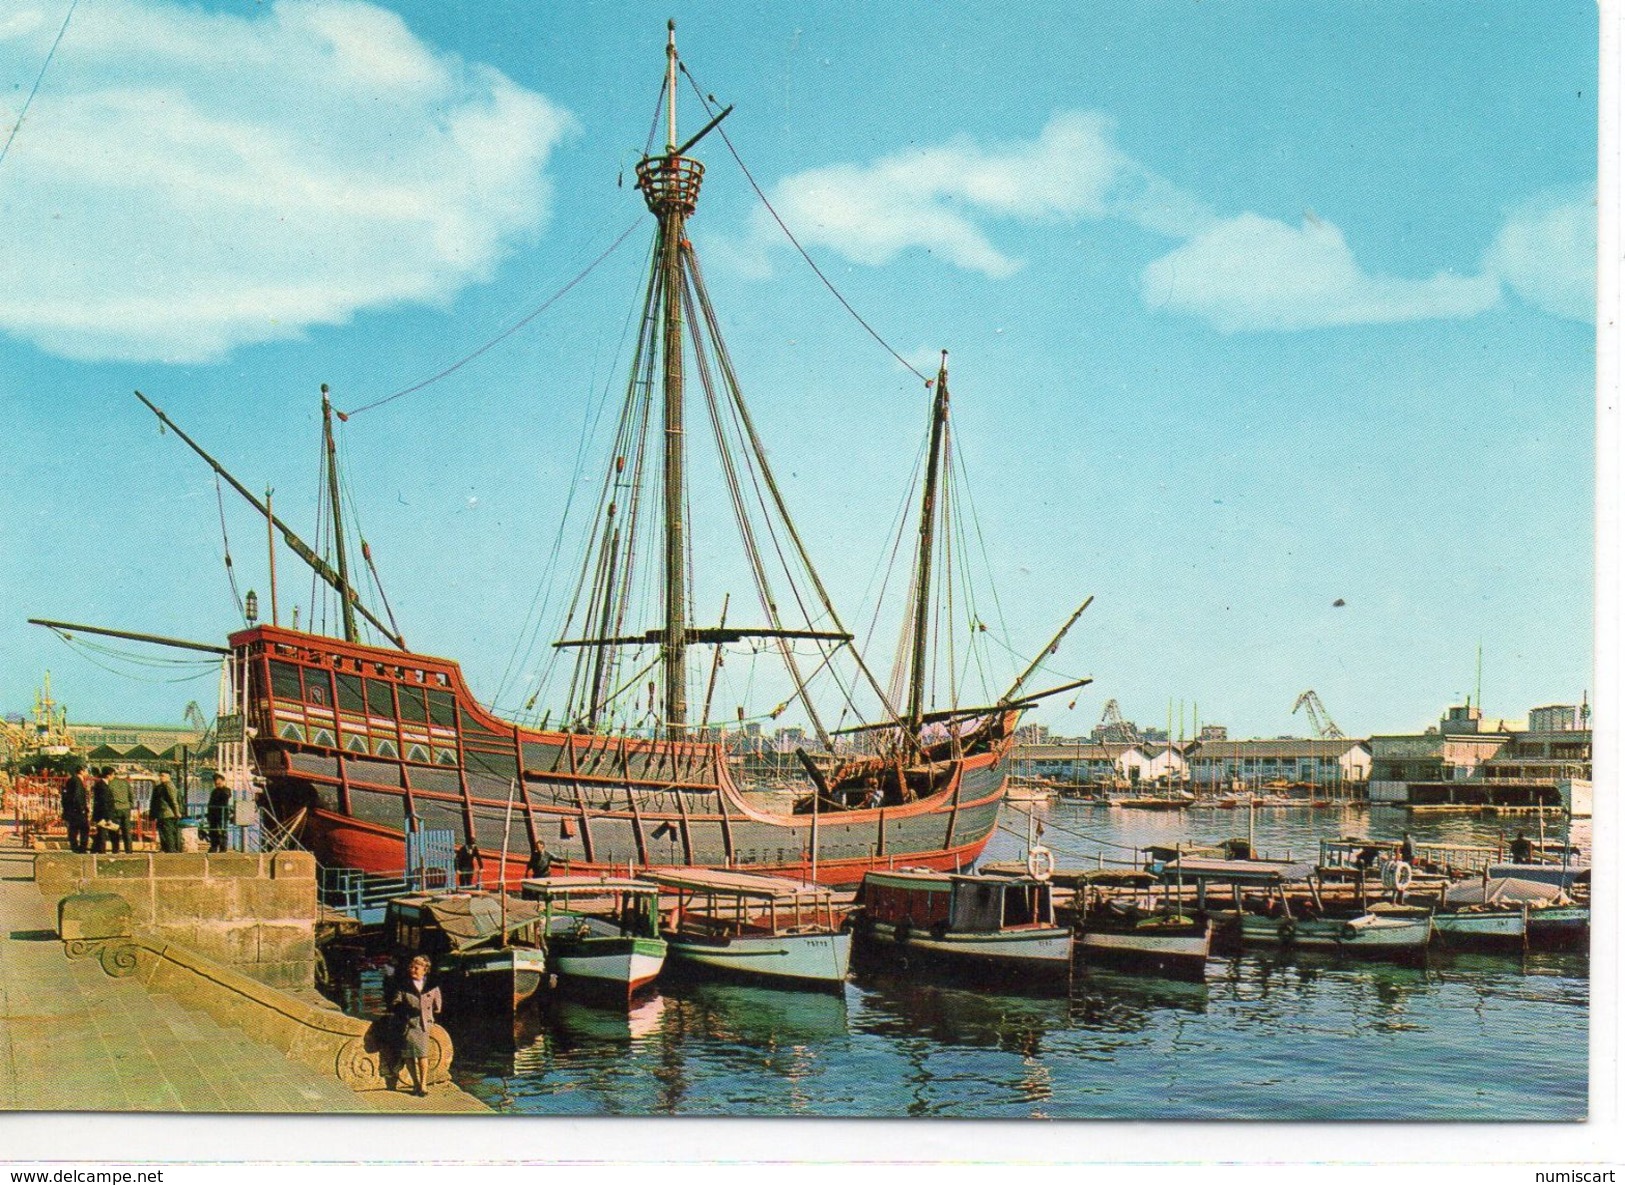 Les navires & navigation voilier modèle Mueso Maritimo Barcelone carte postale Espagne 